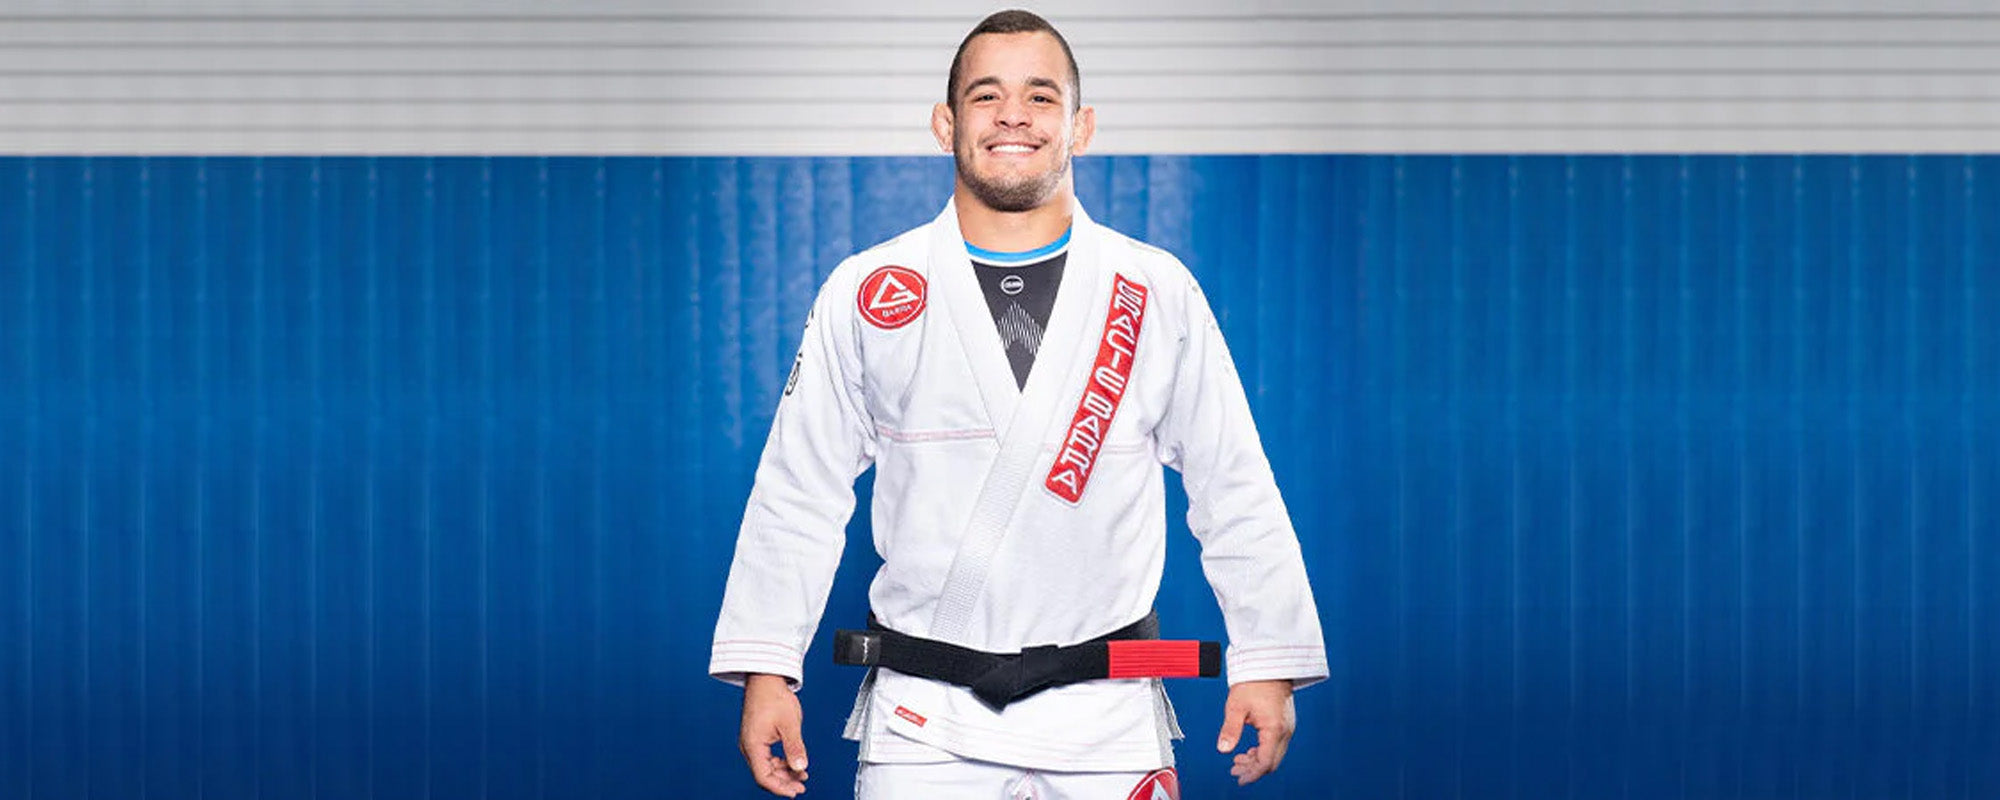 Pedro Marinho - The BJJ No-Gi Champion